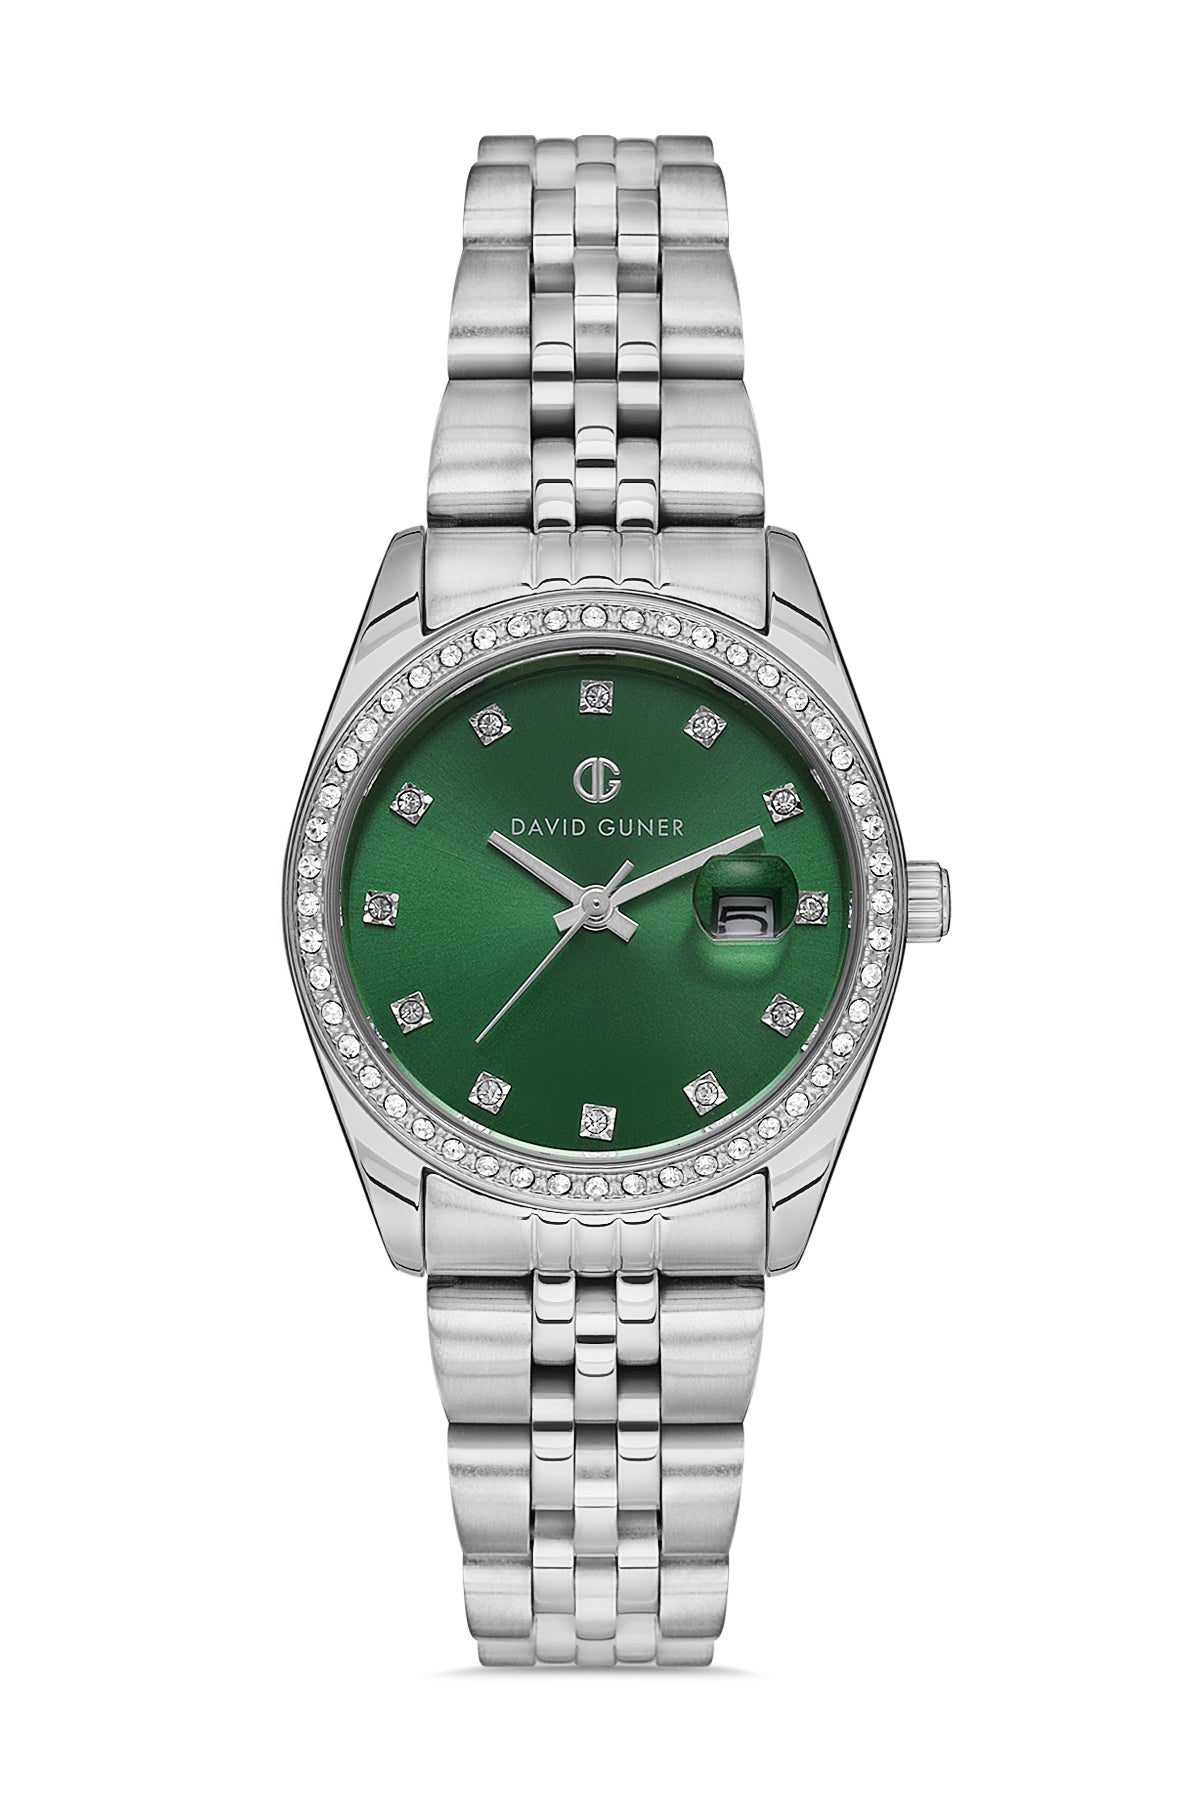 David Guner Silver Plated Green Dial Women's Wristwatch